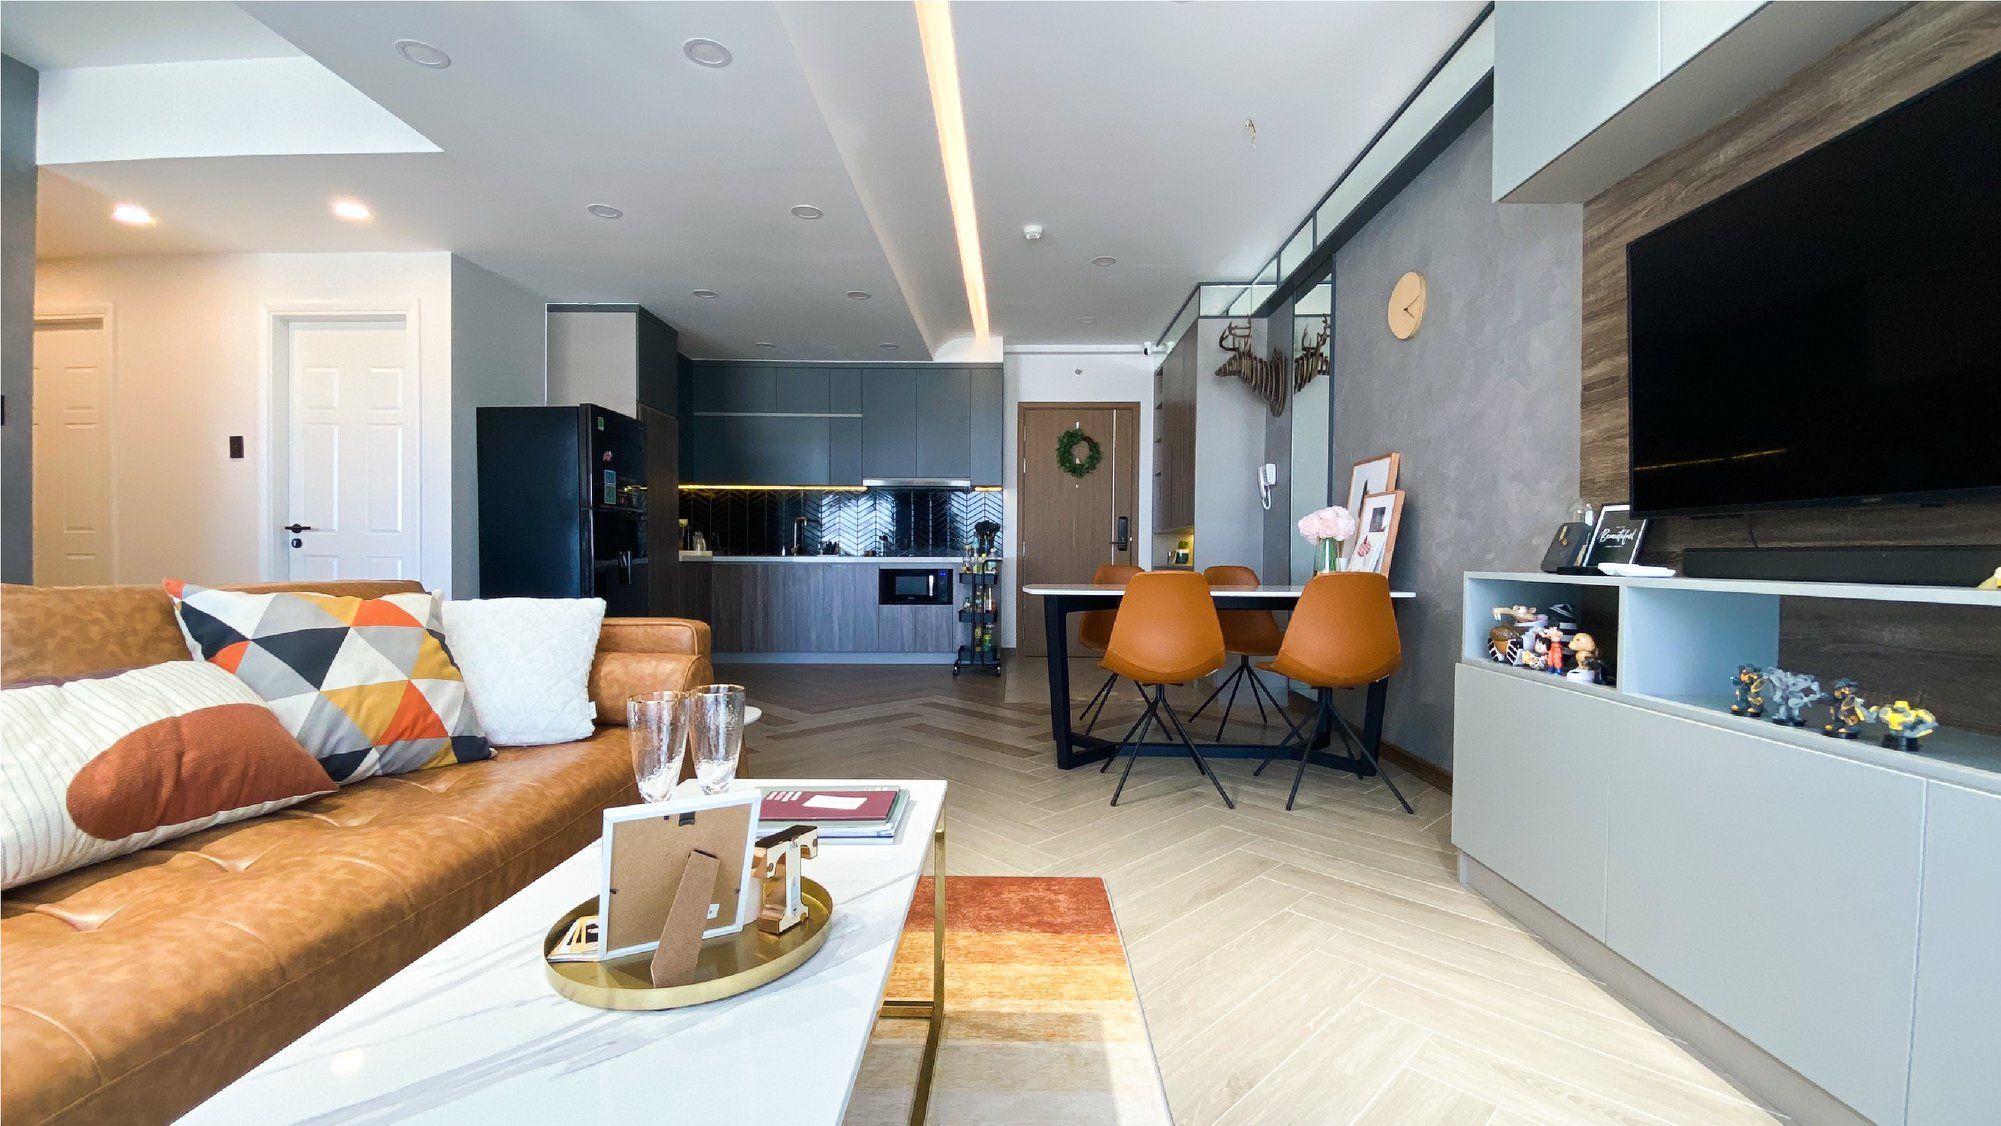 Thi công phòng khách liền bếp giúp mở rộng không gian cho chung cư nhỏ